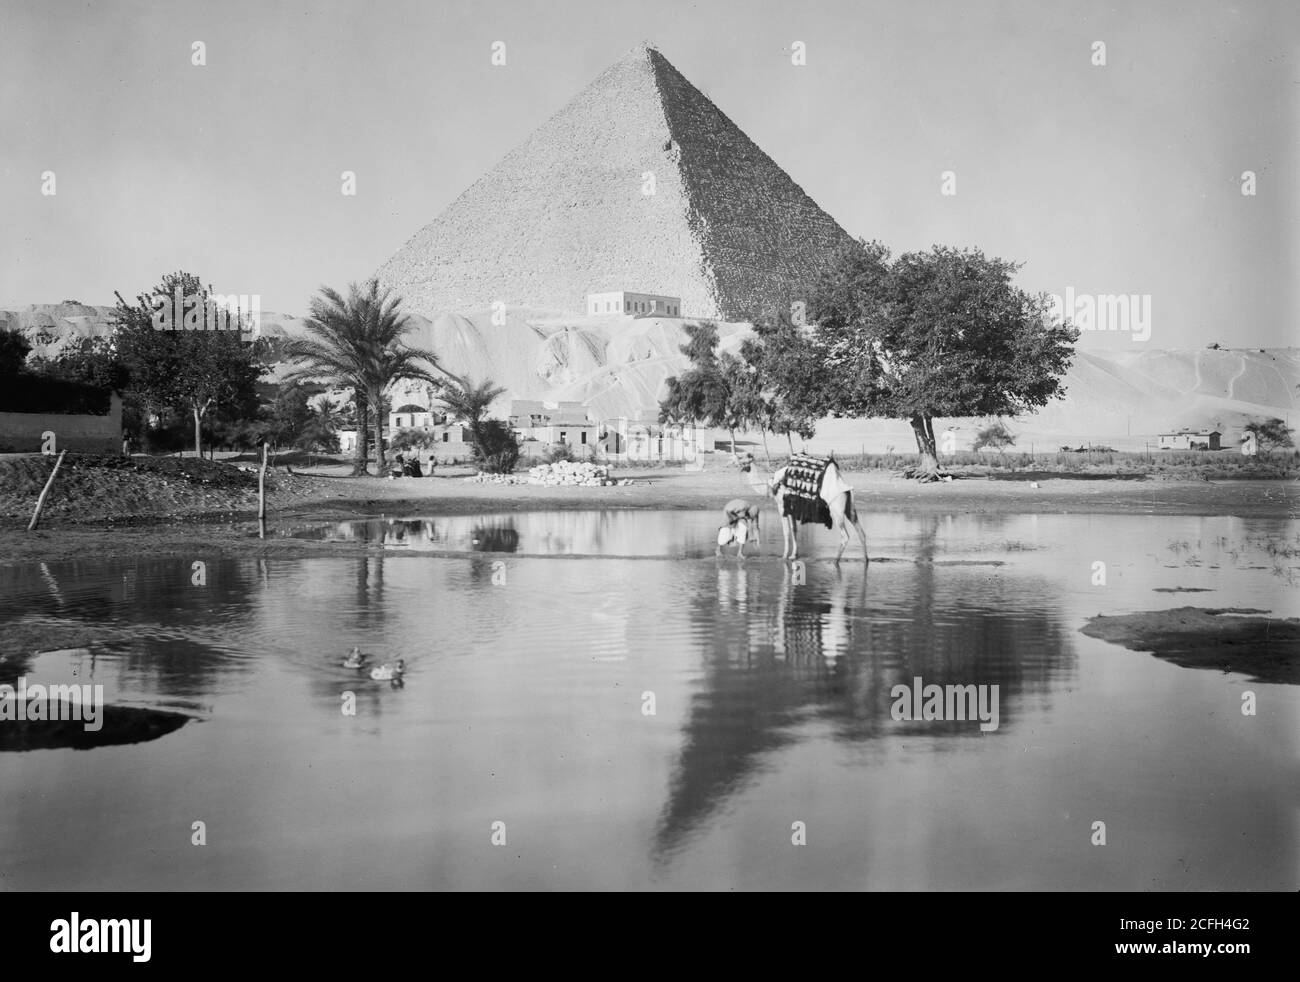 Originalunterschrift: Ägypten. Pyramiden von Gizeh. Die Große Pyramide. Reflektierende Pyramide & montierter Kamelmann - Ort: Ägypten--Jizah Ca. 1934-1939 Stockfoto